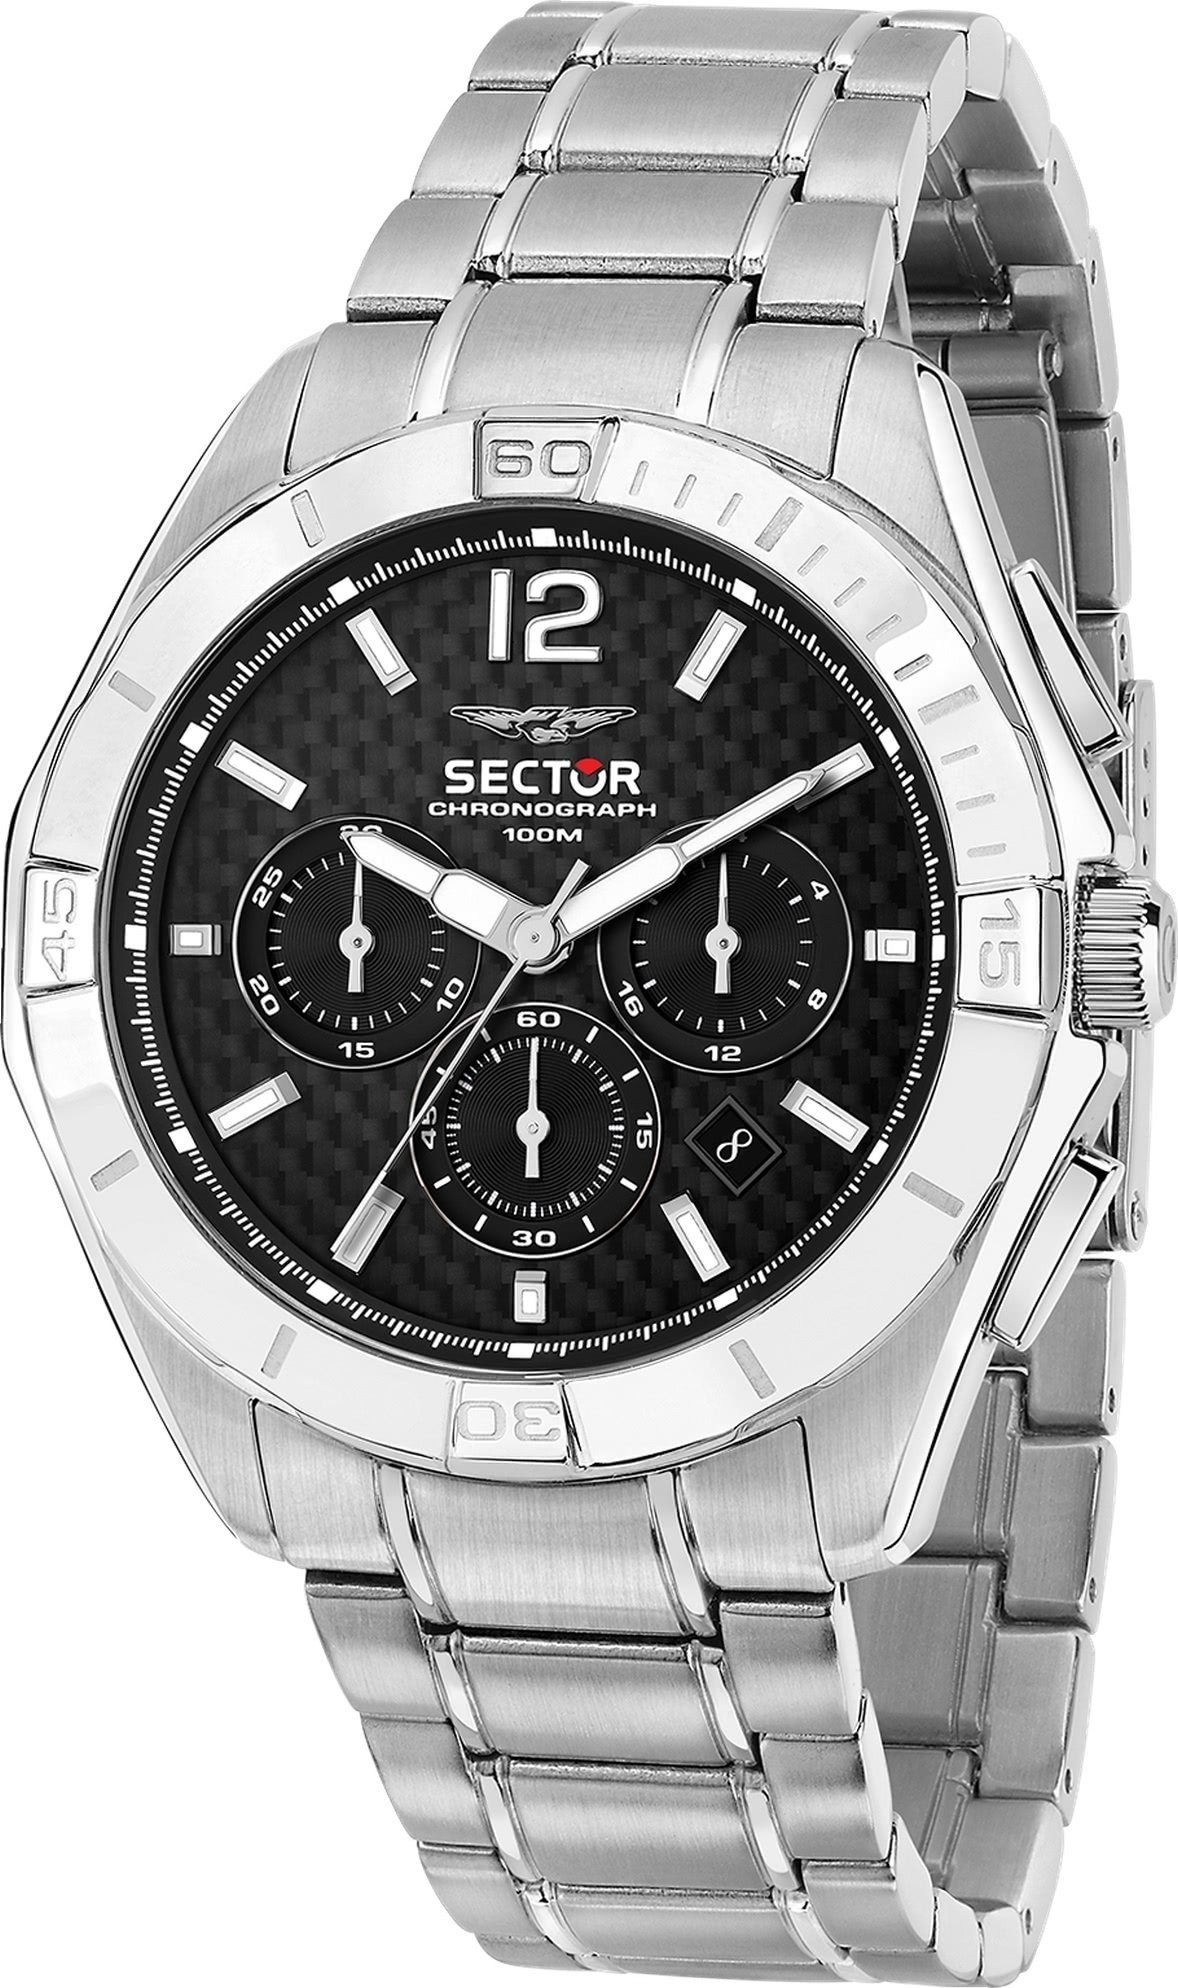 Sector Chronograph Sector Chrono, (48mm), Fashion Armbanduhr Herren silber, Herren Edelstahlarmband groß Armbanduhr rund